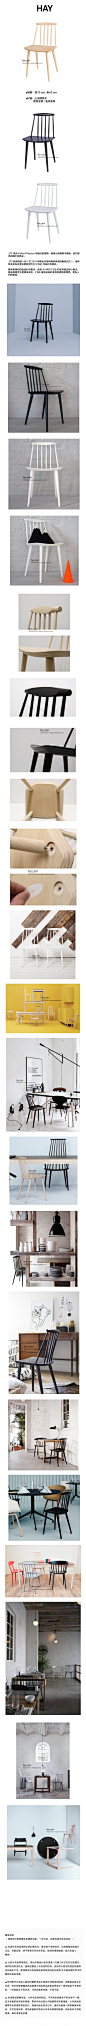 【黑色現貨】原裝進口丹麥Hay 簡約設計實木單椅 椅子 餐椅-淘宝网